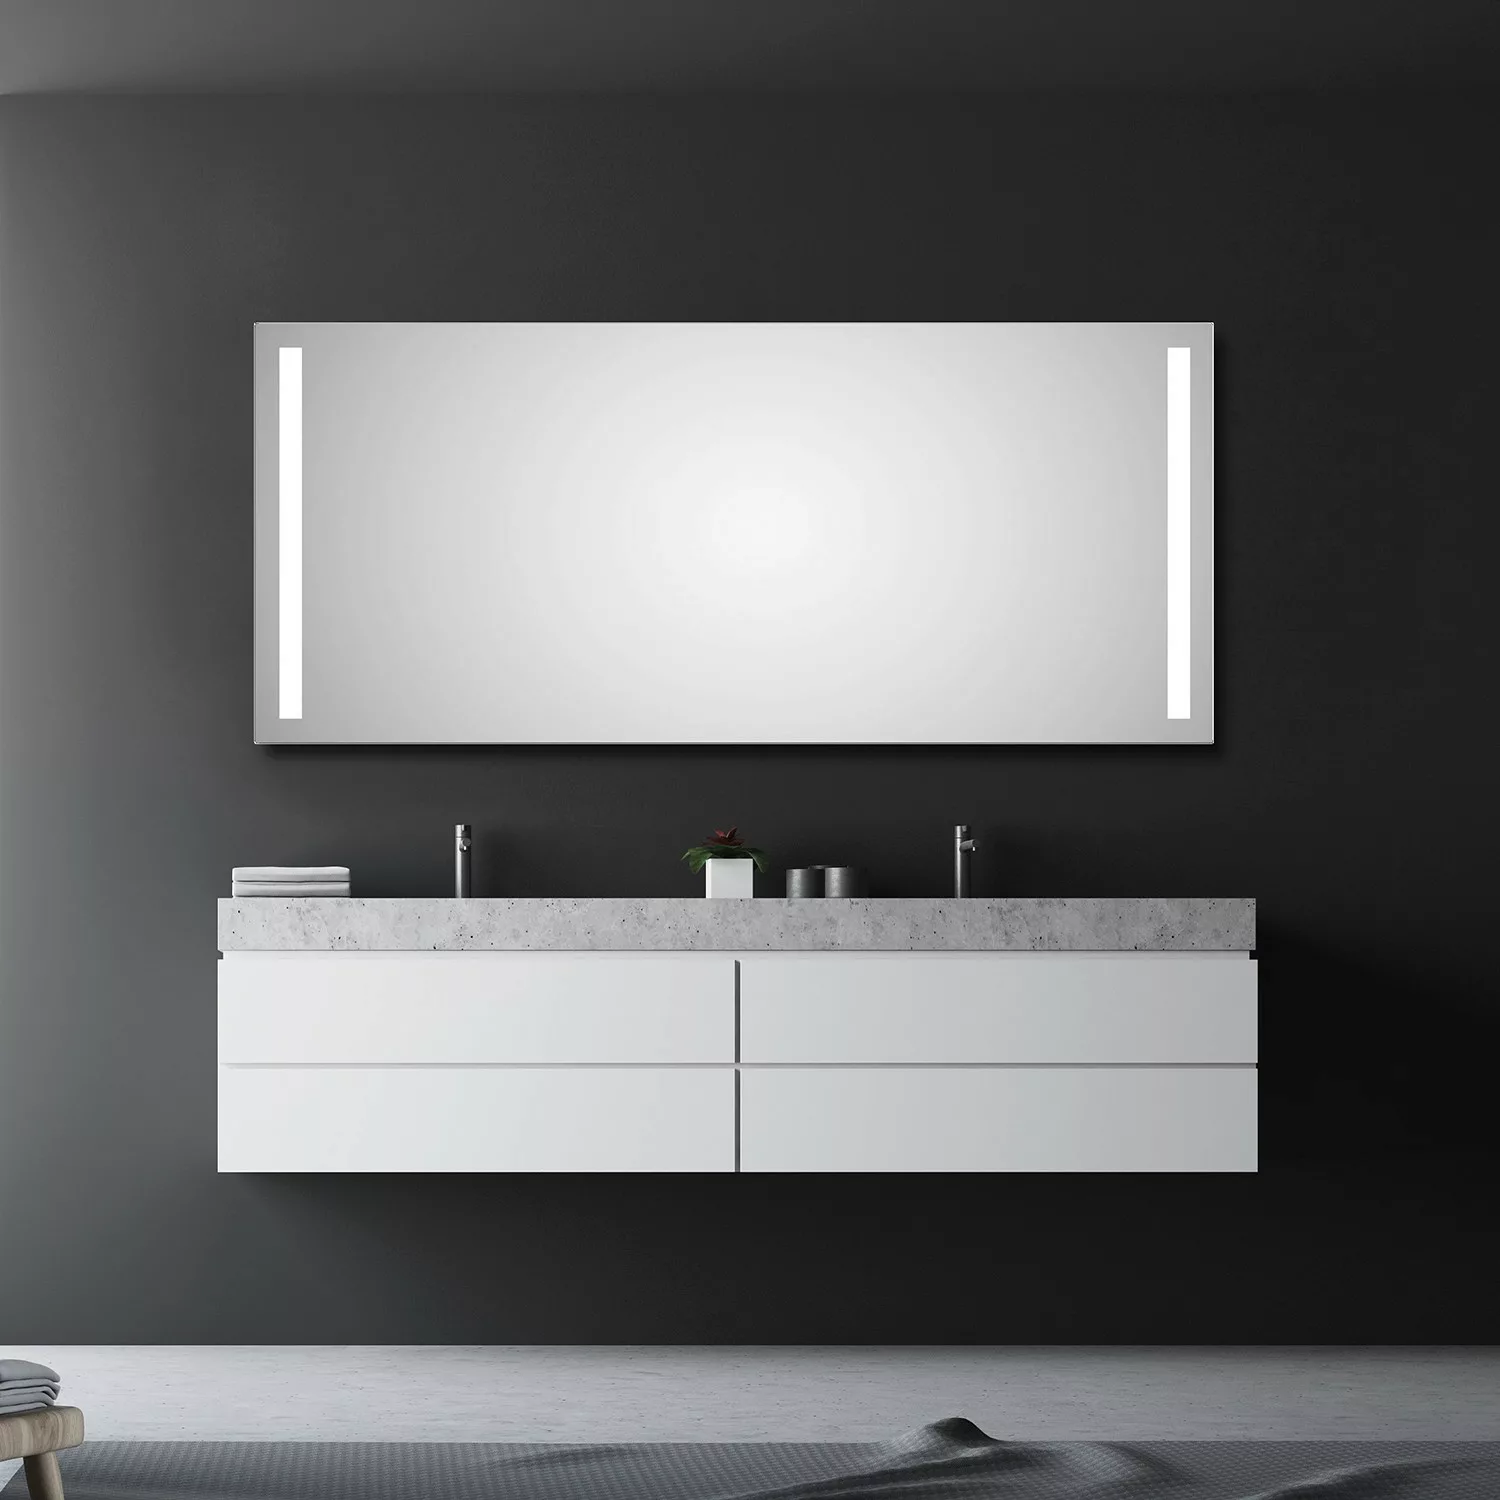 DSK Design LED-Lichtspiegel Silver Dream 160 cm x 70 cm günstig online kaufen